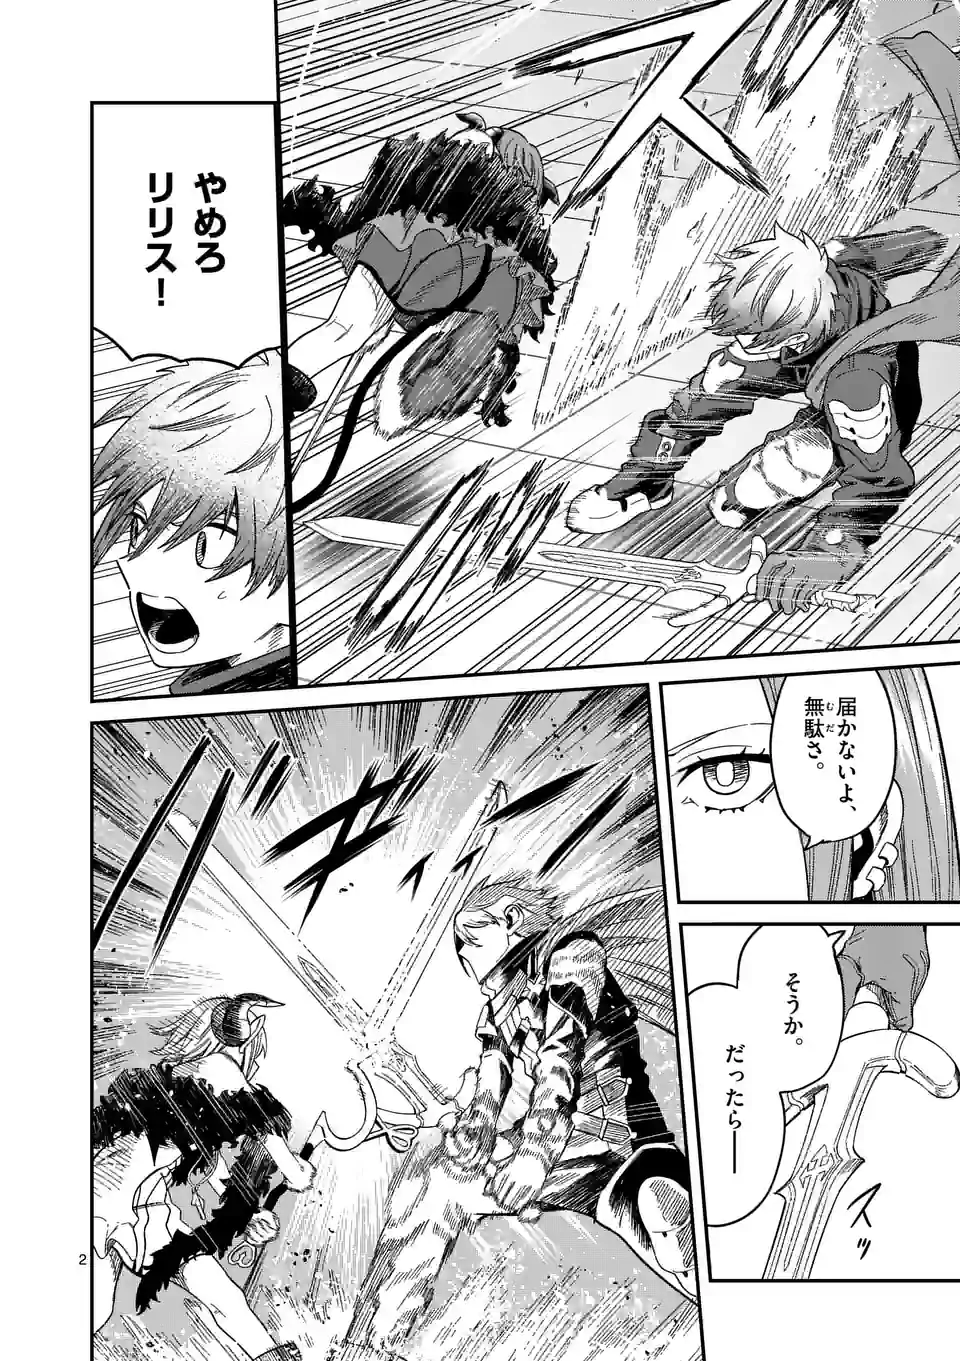 Power-Hara Genkai Yuusha, Maougun kara Koutaiguu de Scout sareru - Chapter 3 - Page 2